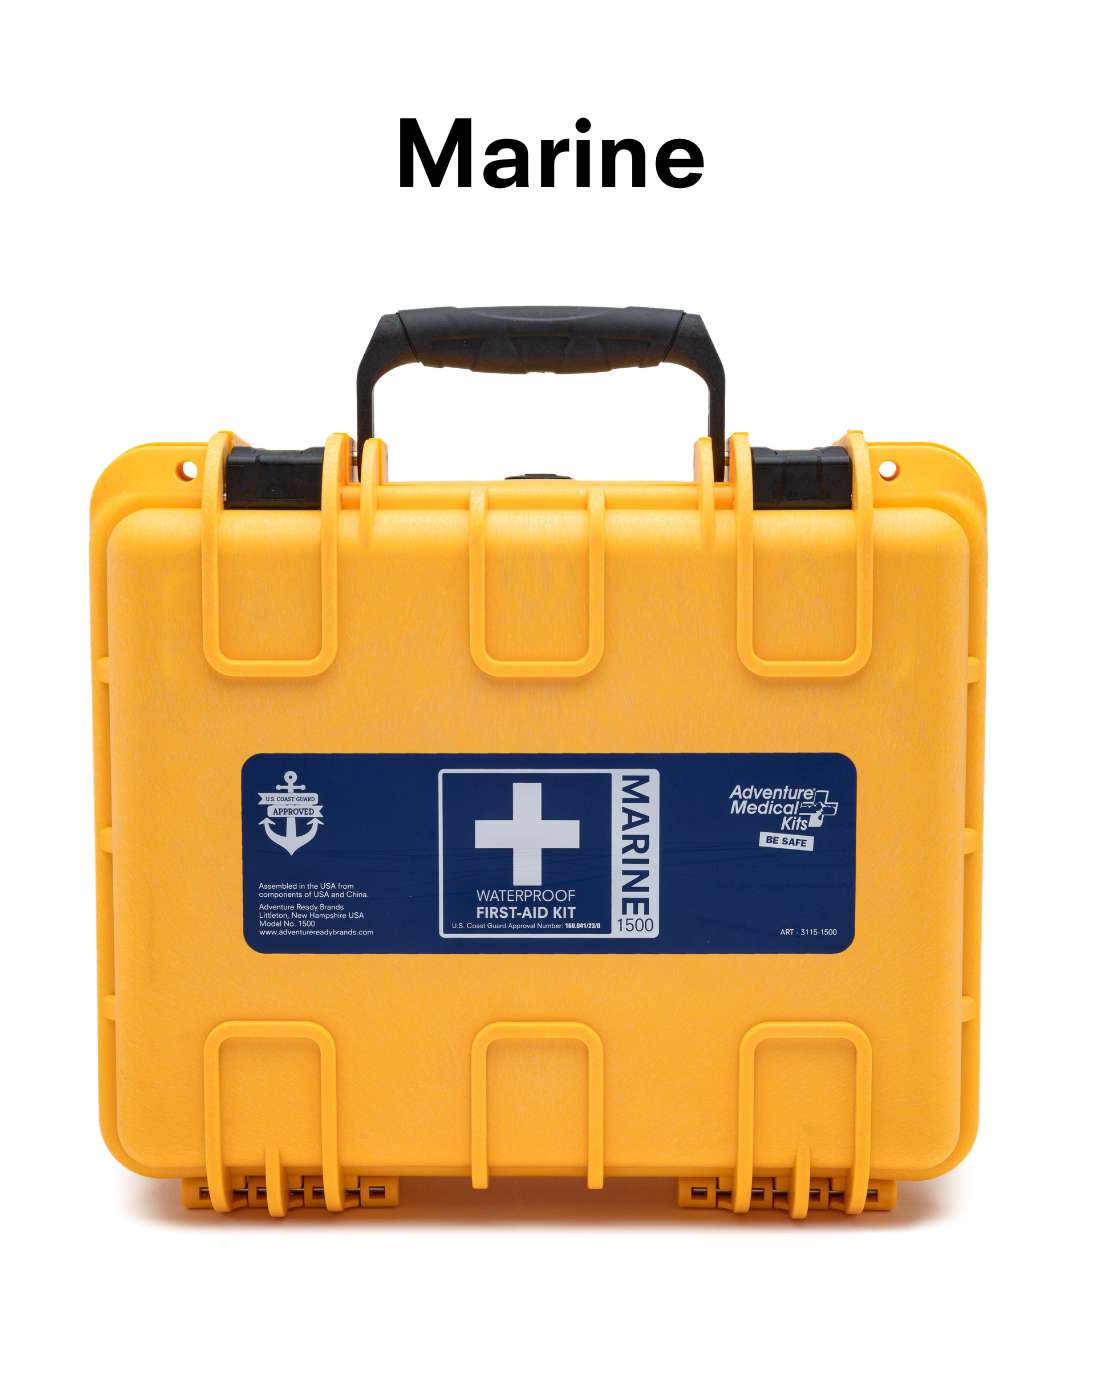 Marine 1500 Kit